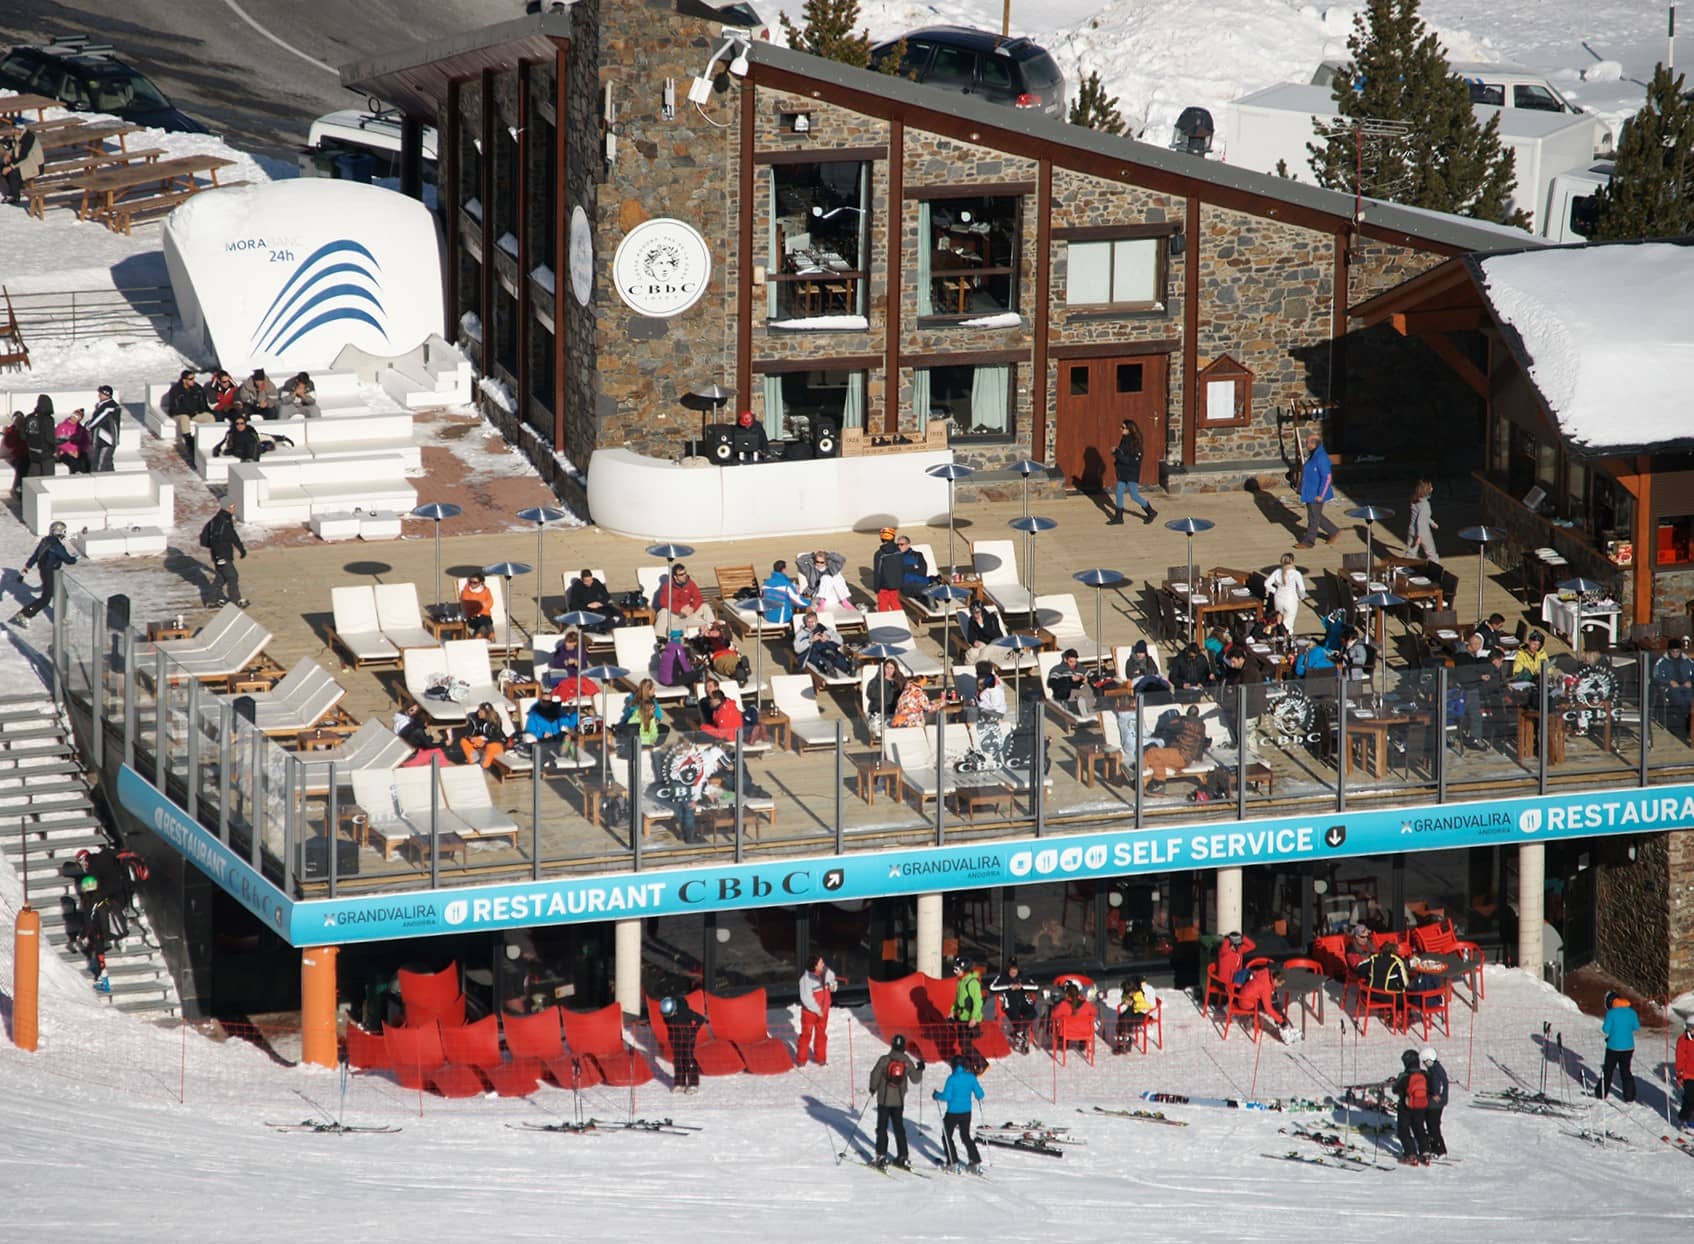 CBBC Costa Rodona Apres Ski Andorra Must visit Bars Pas de la Casa